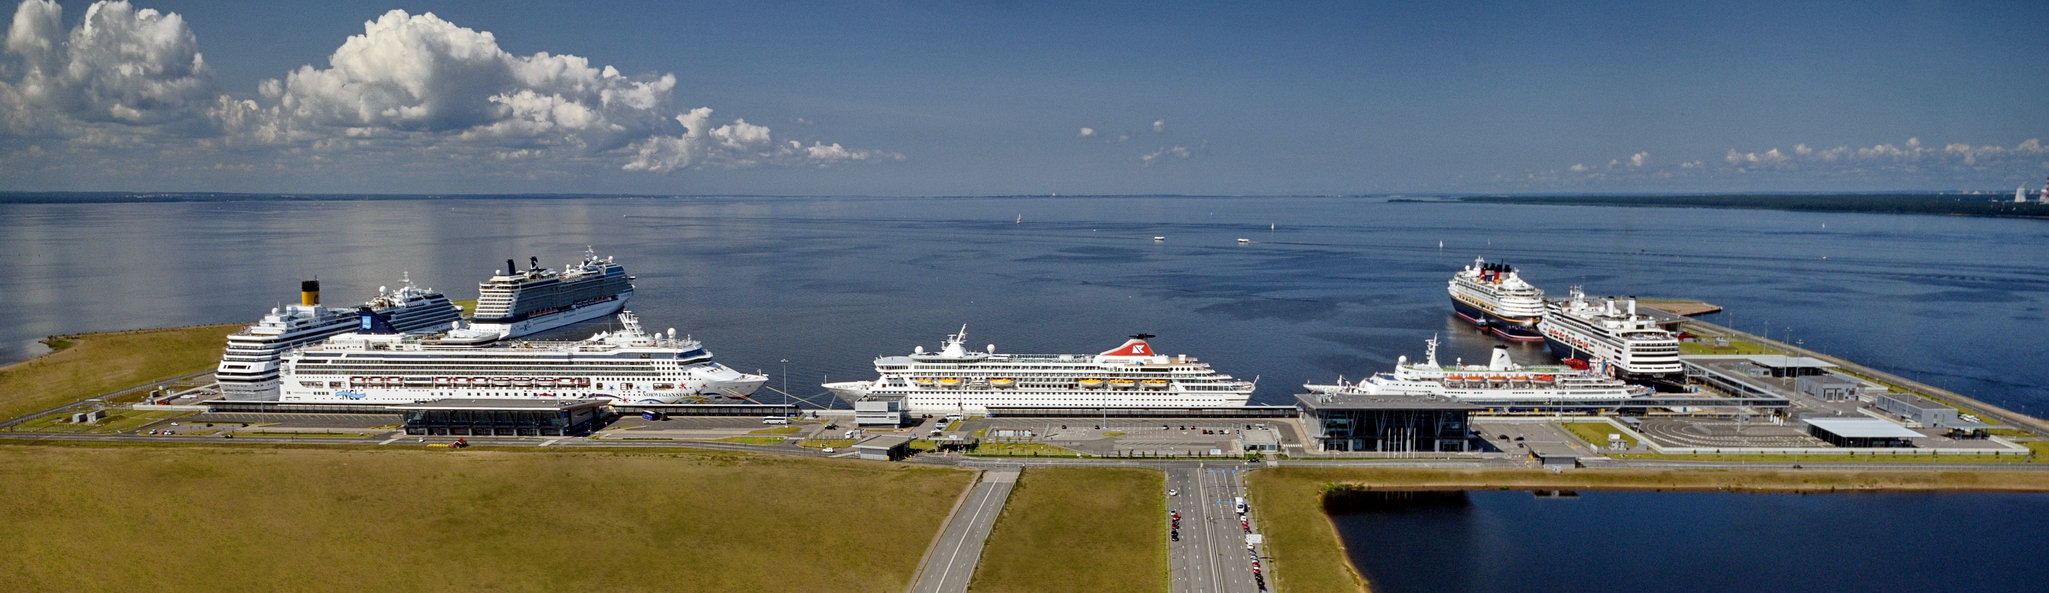 пассажирский порт морской фасад в санкт петербурге